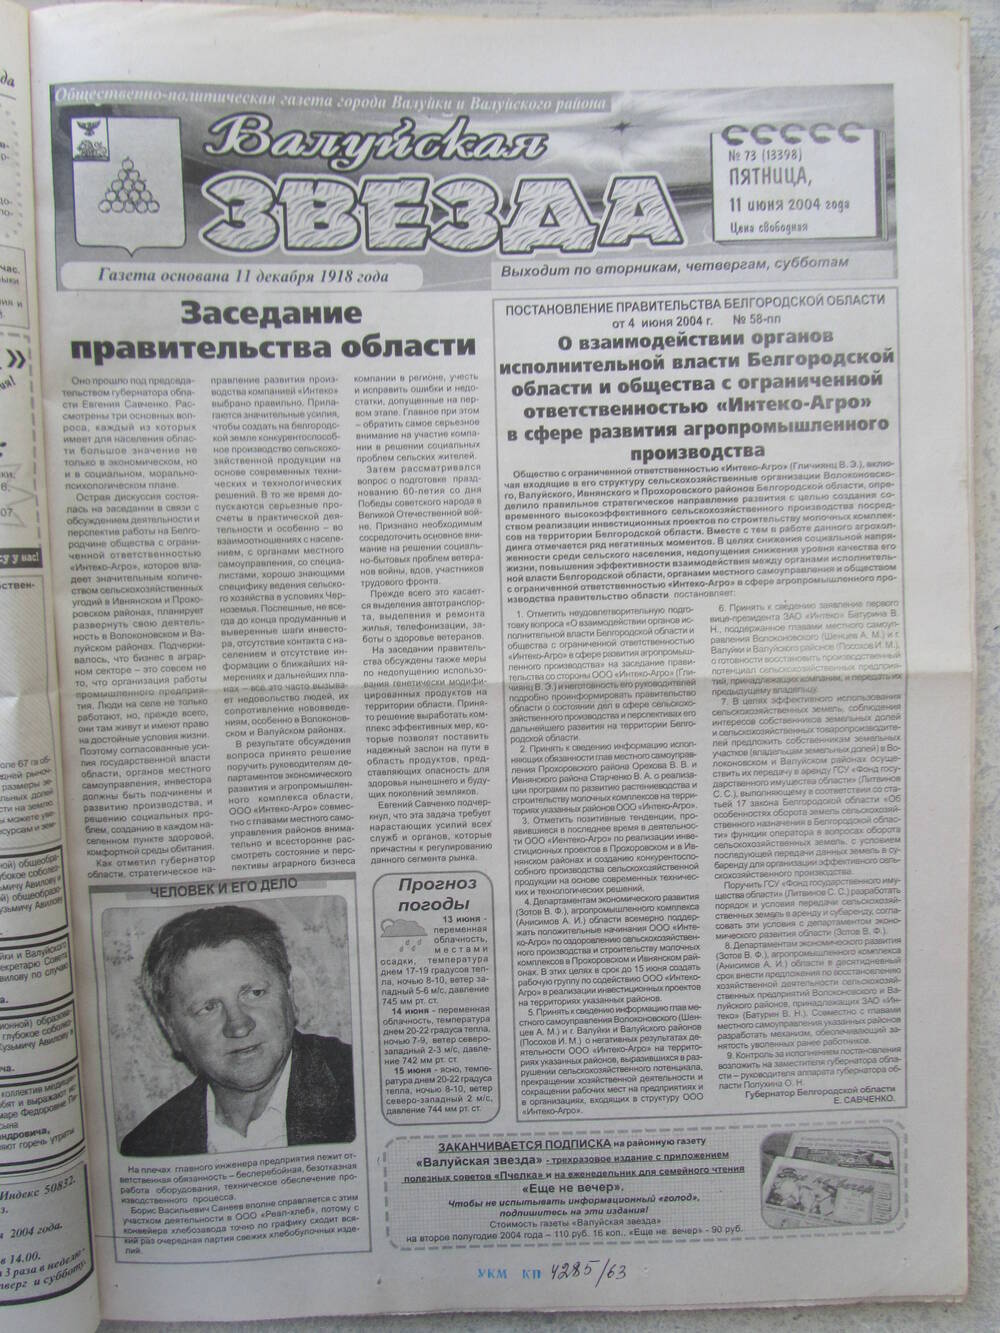 Газета Валуйская звезда №73 от 11.06.2004 г